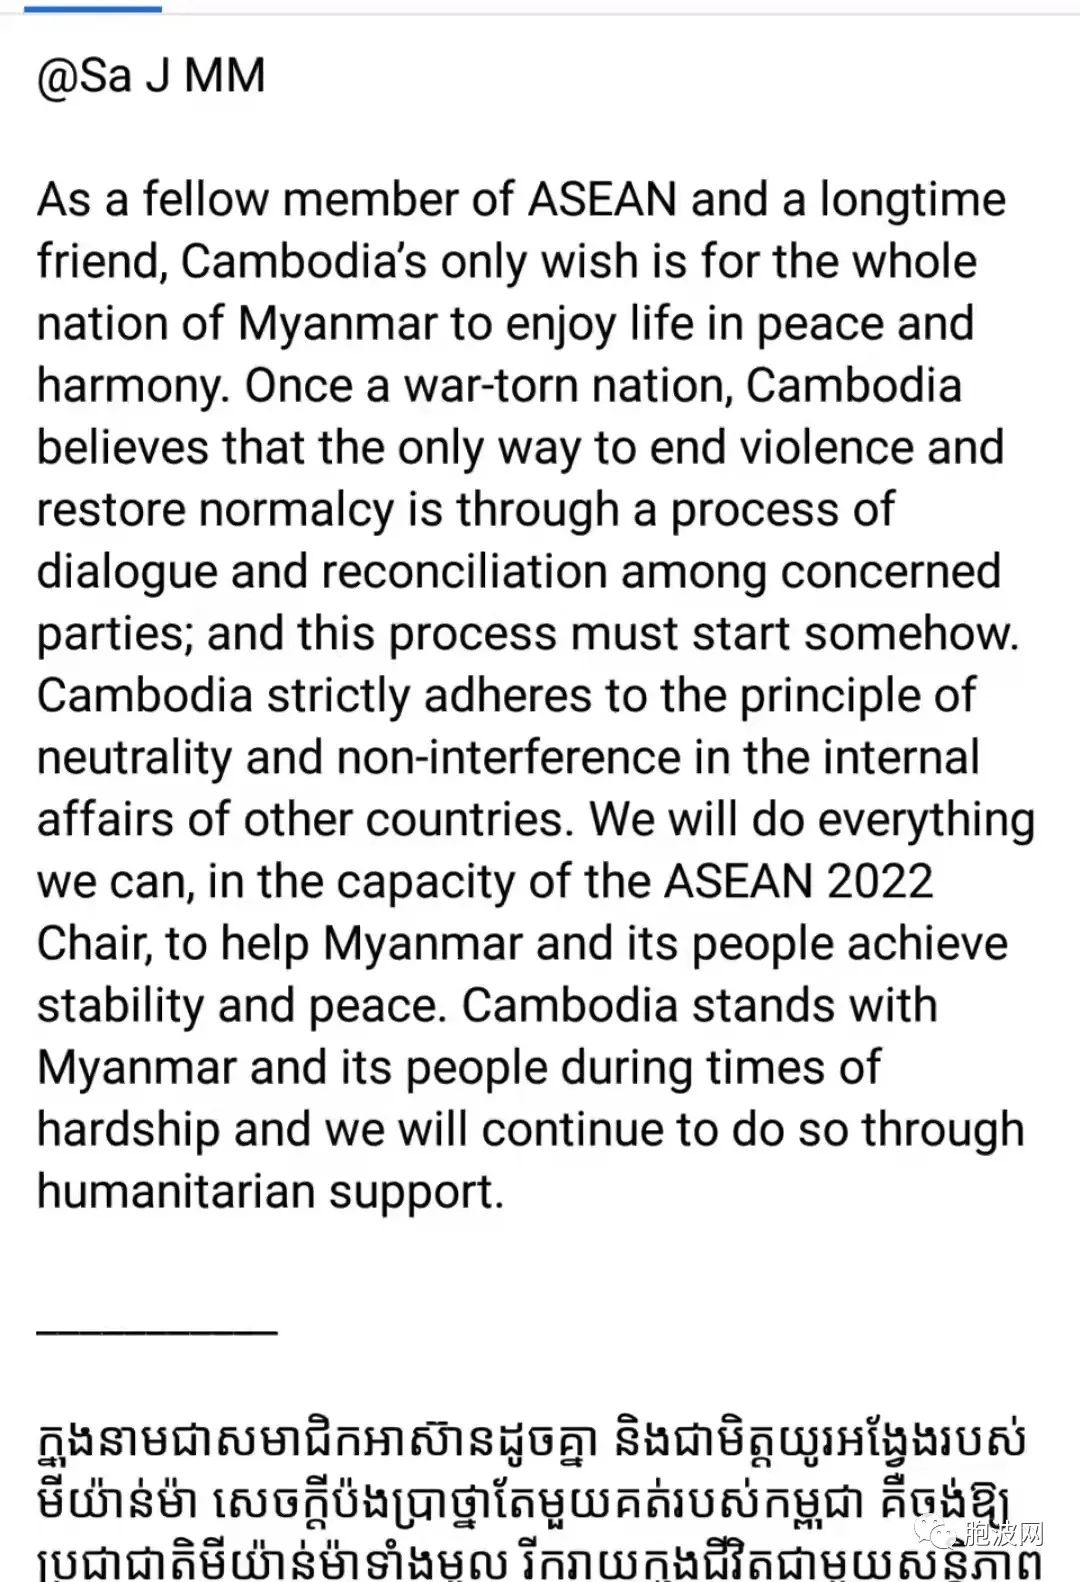 关于缅甸，美柬各执一词